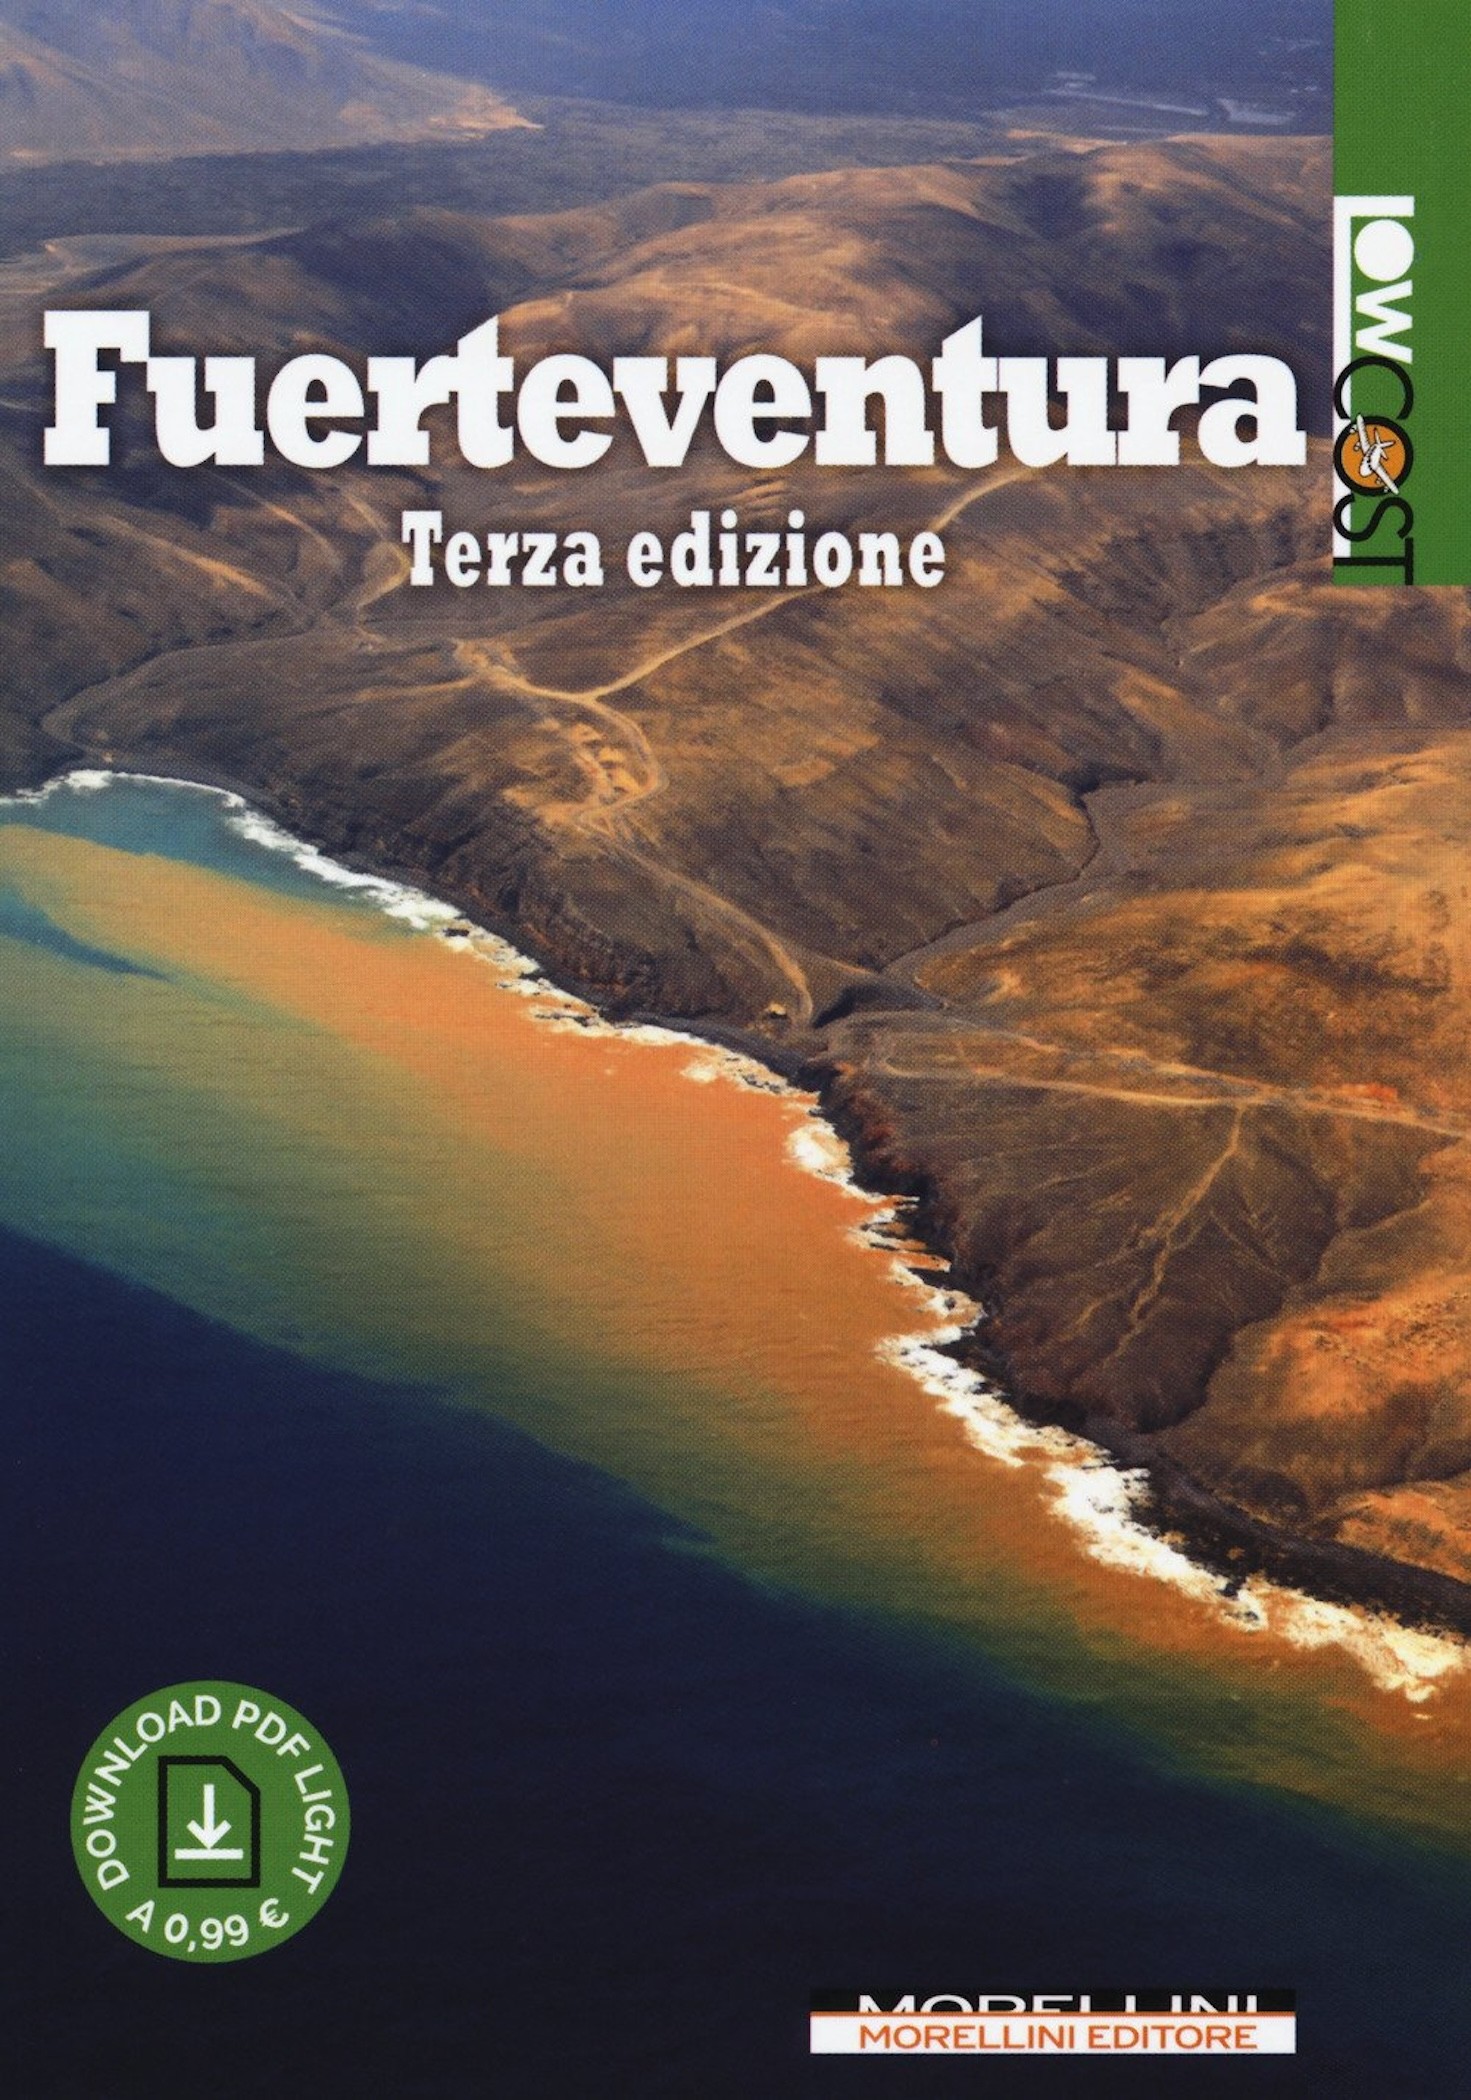 Fuerteventura III edizione - Librerie.coop